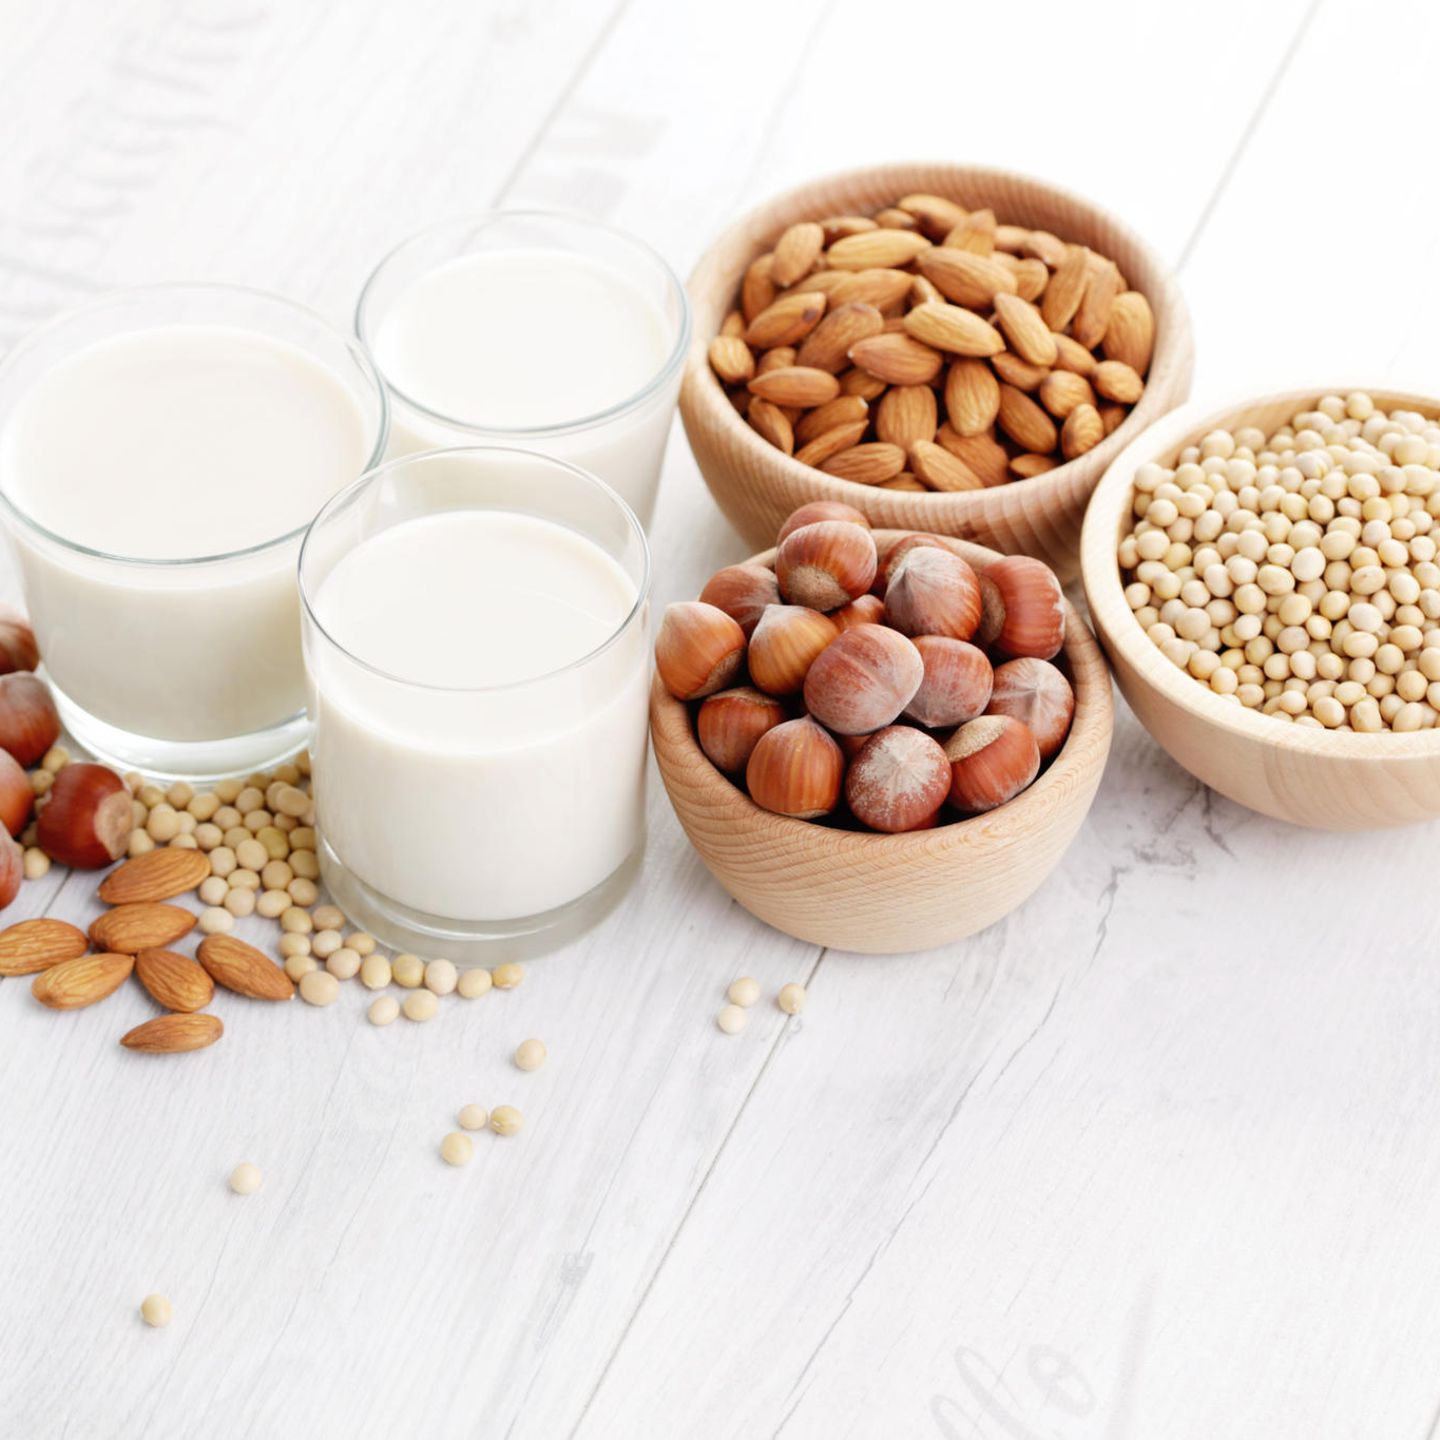 Reismilch: Top Milch-Alternative oder schädlicher Trend? - FIT FOR FUN